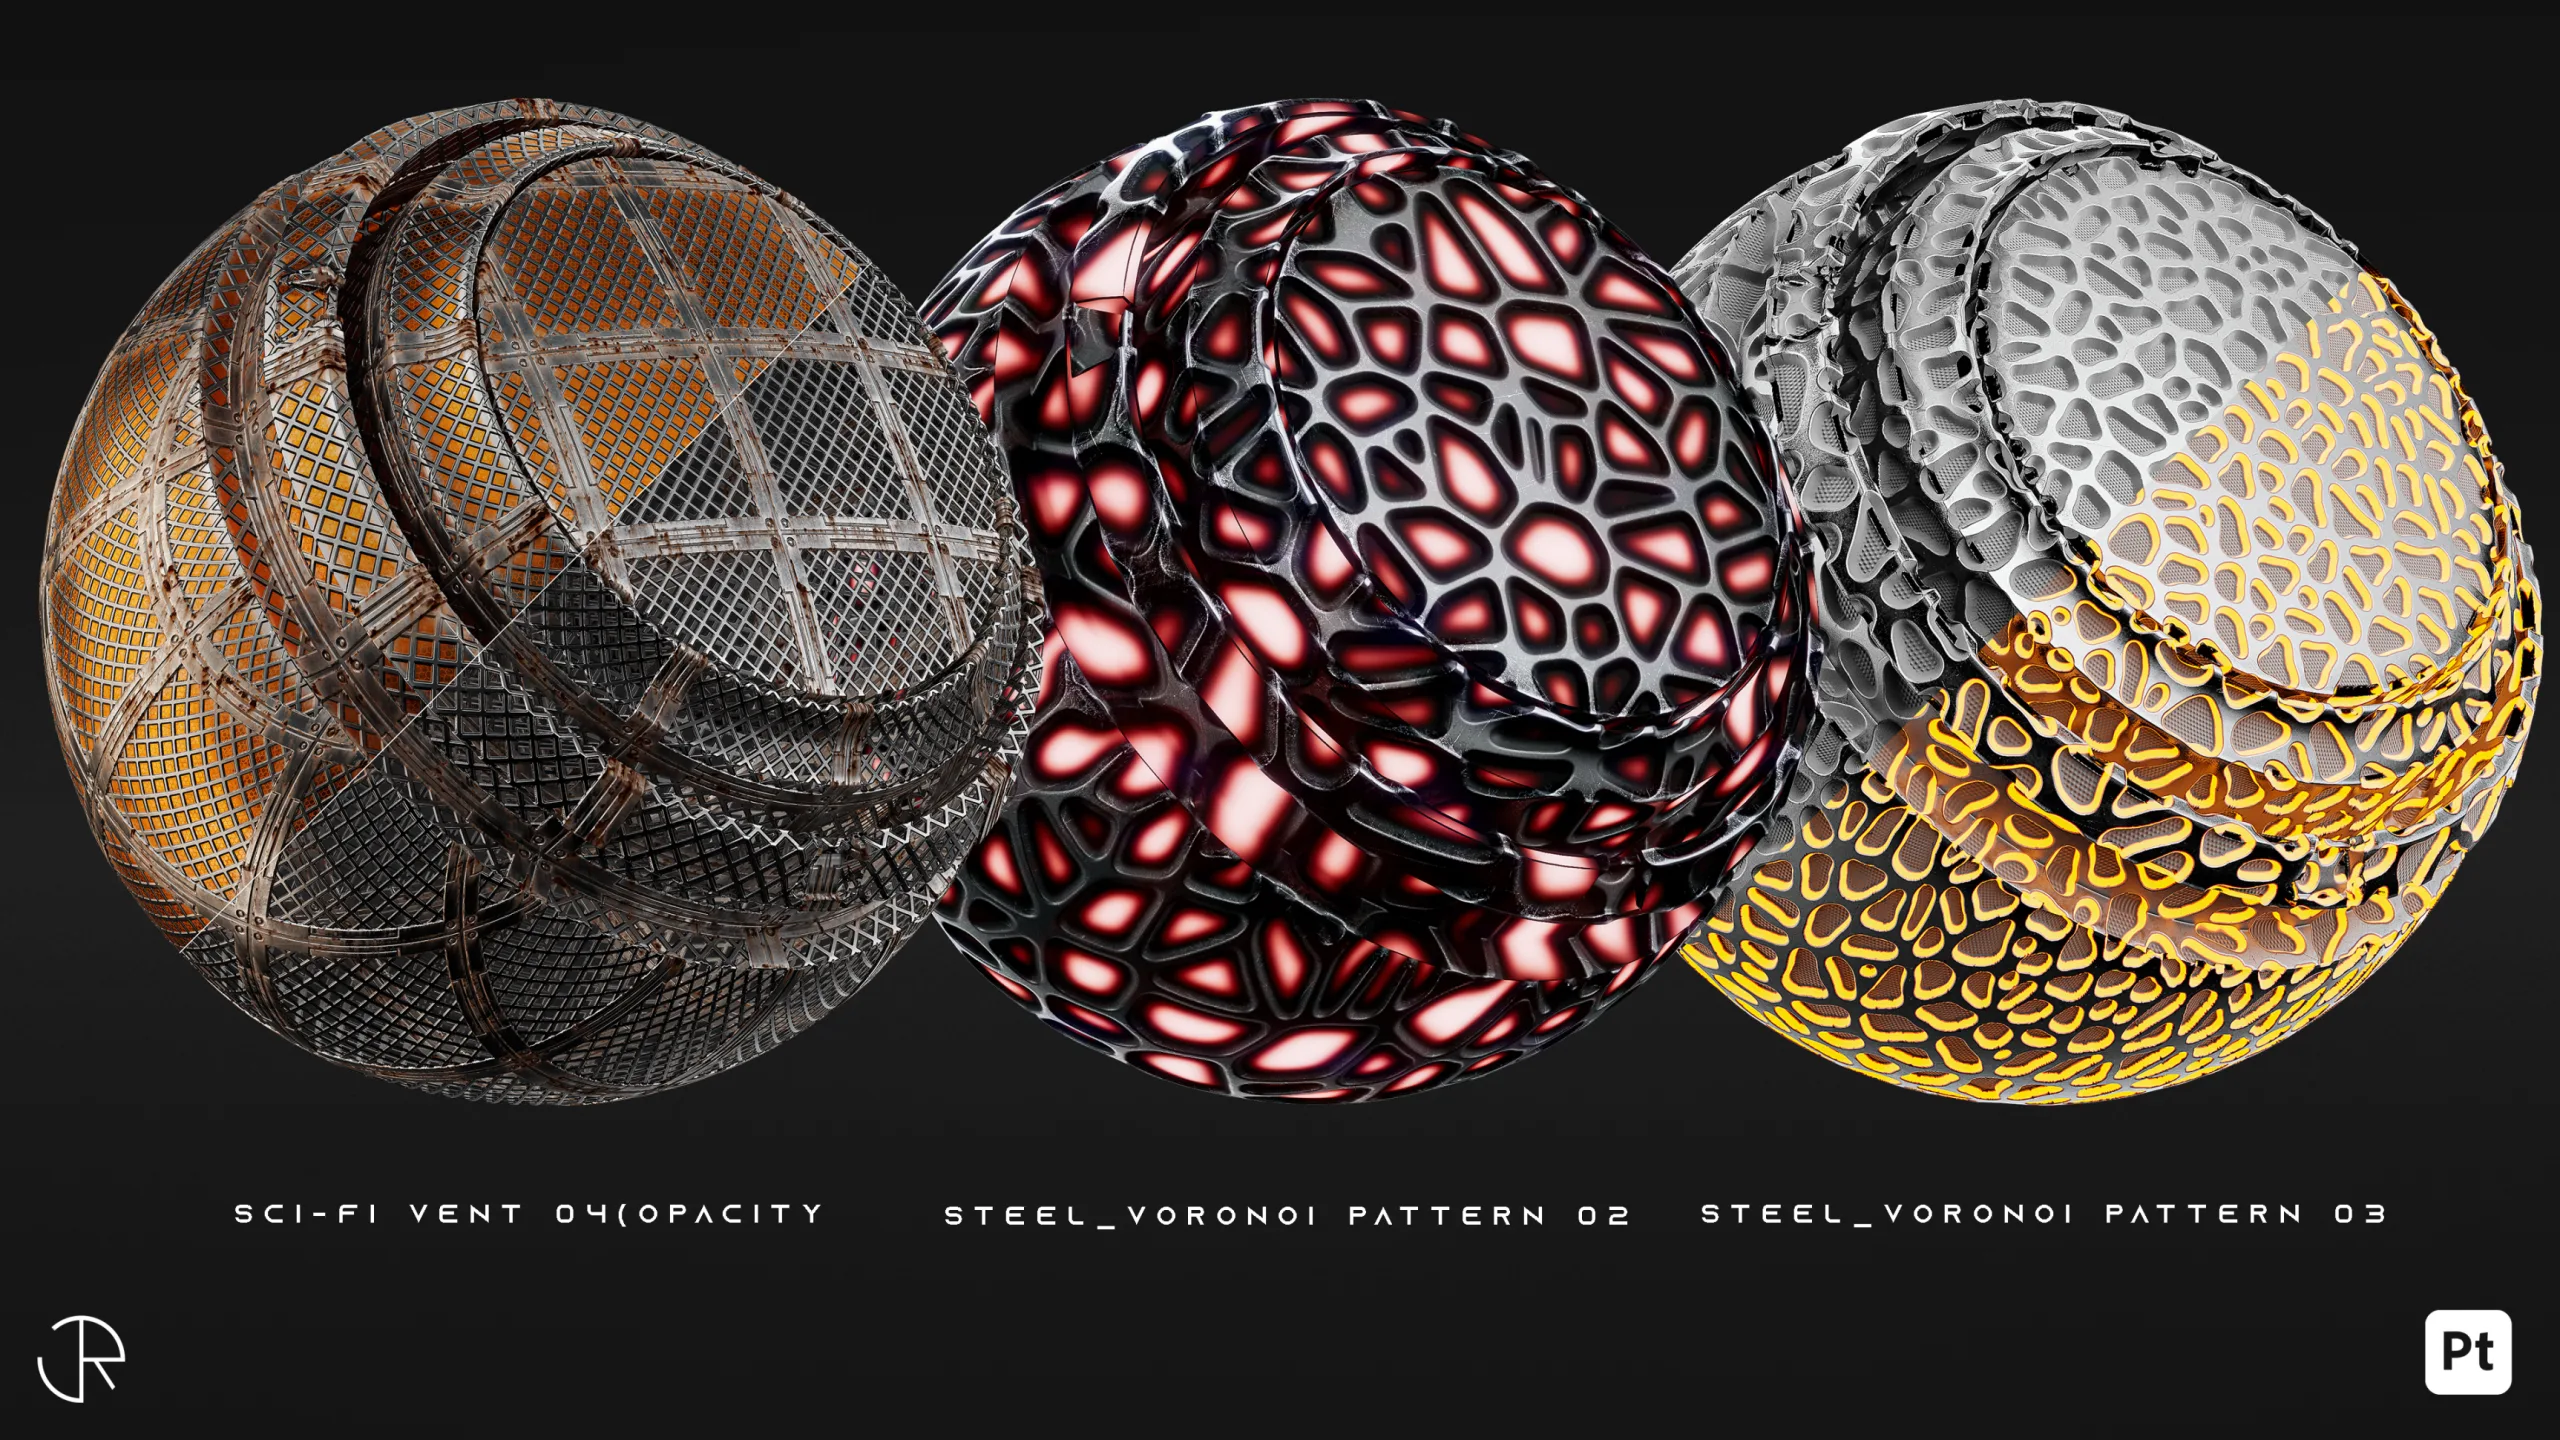 AstroMat Vol 01 | Sci-Fi Smart Materials + Sci-Fi pattern + PBR Textures